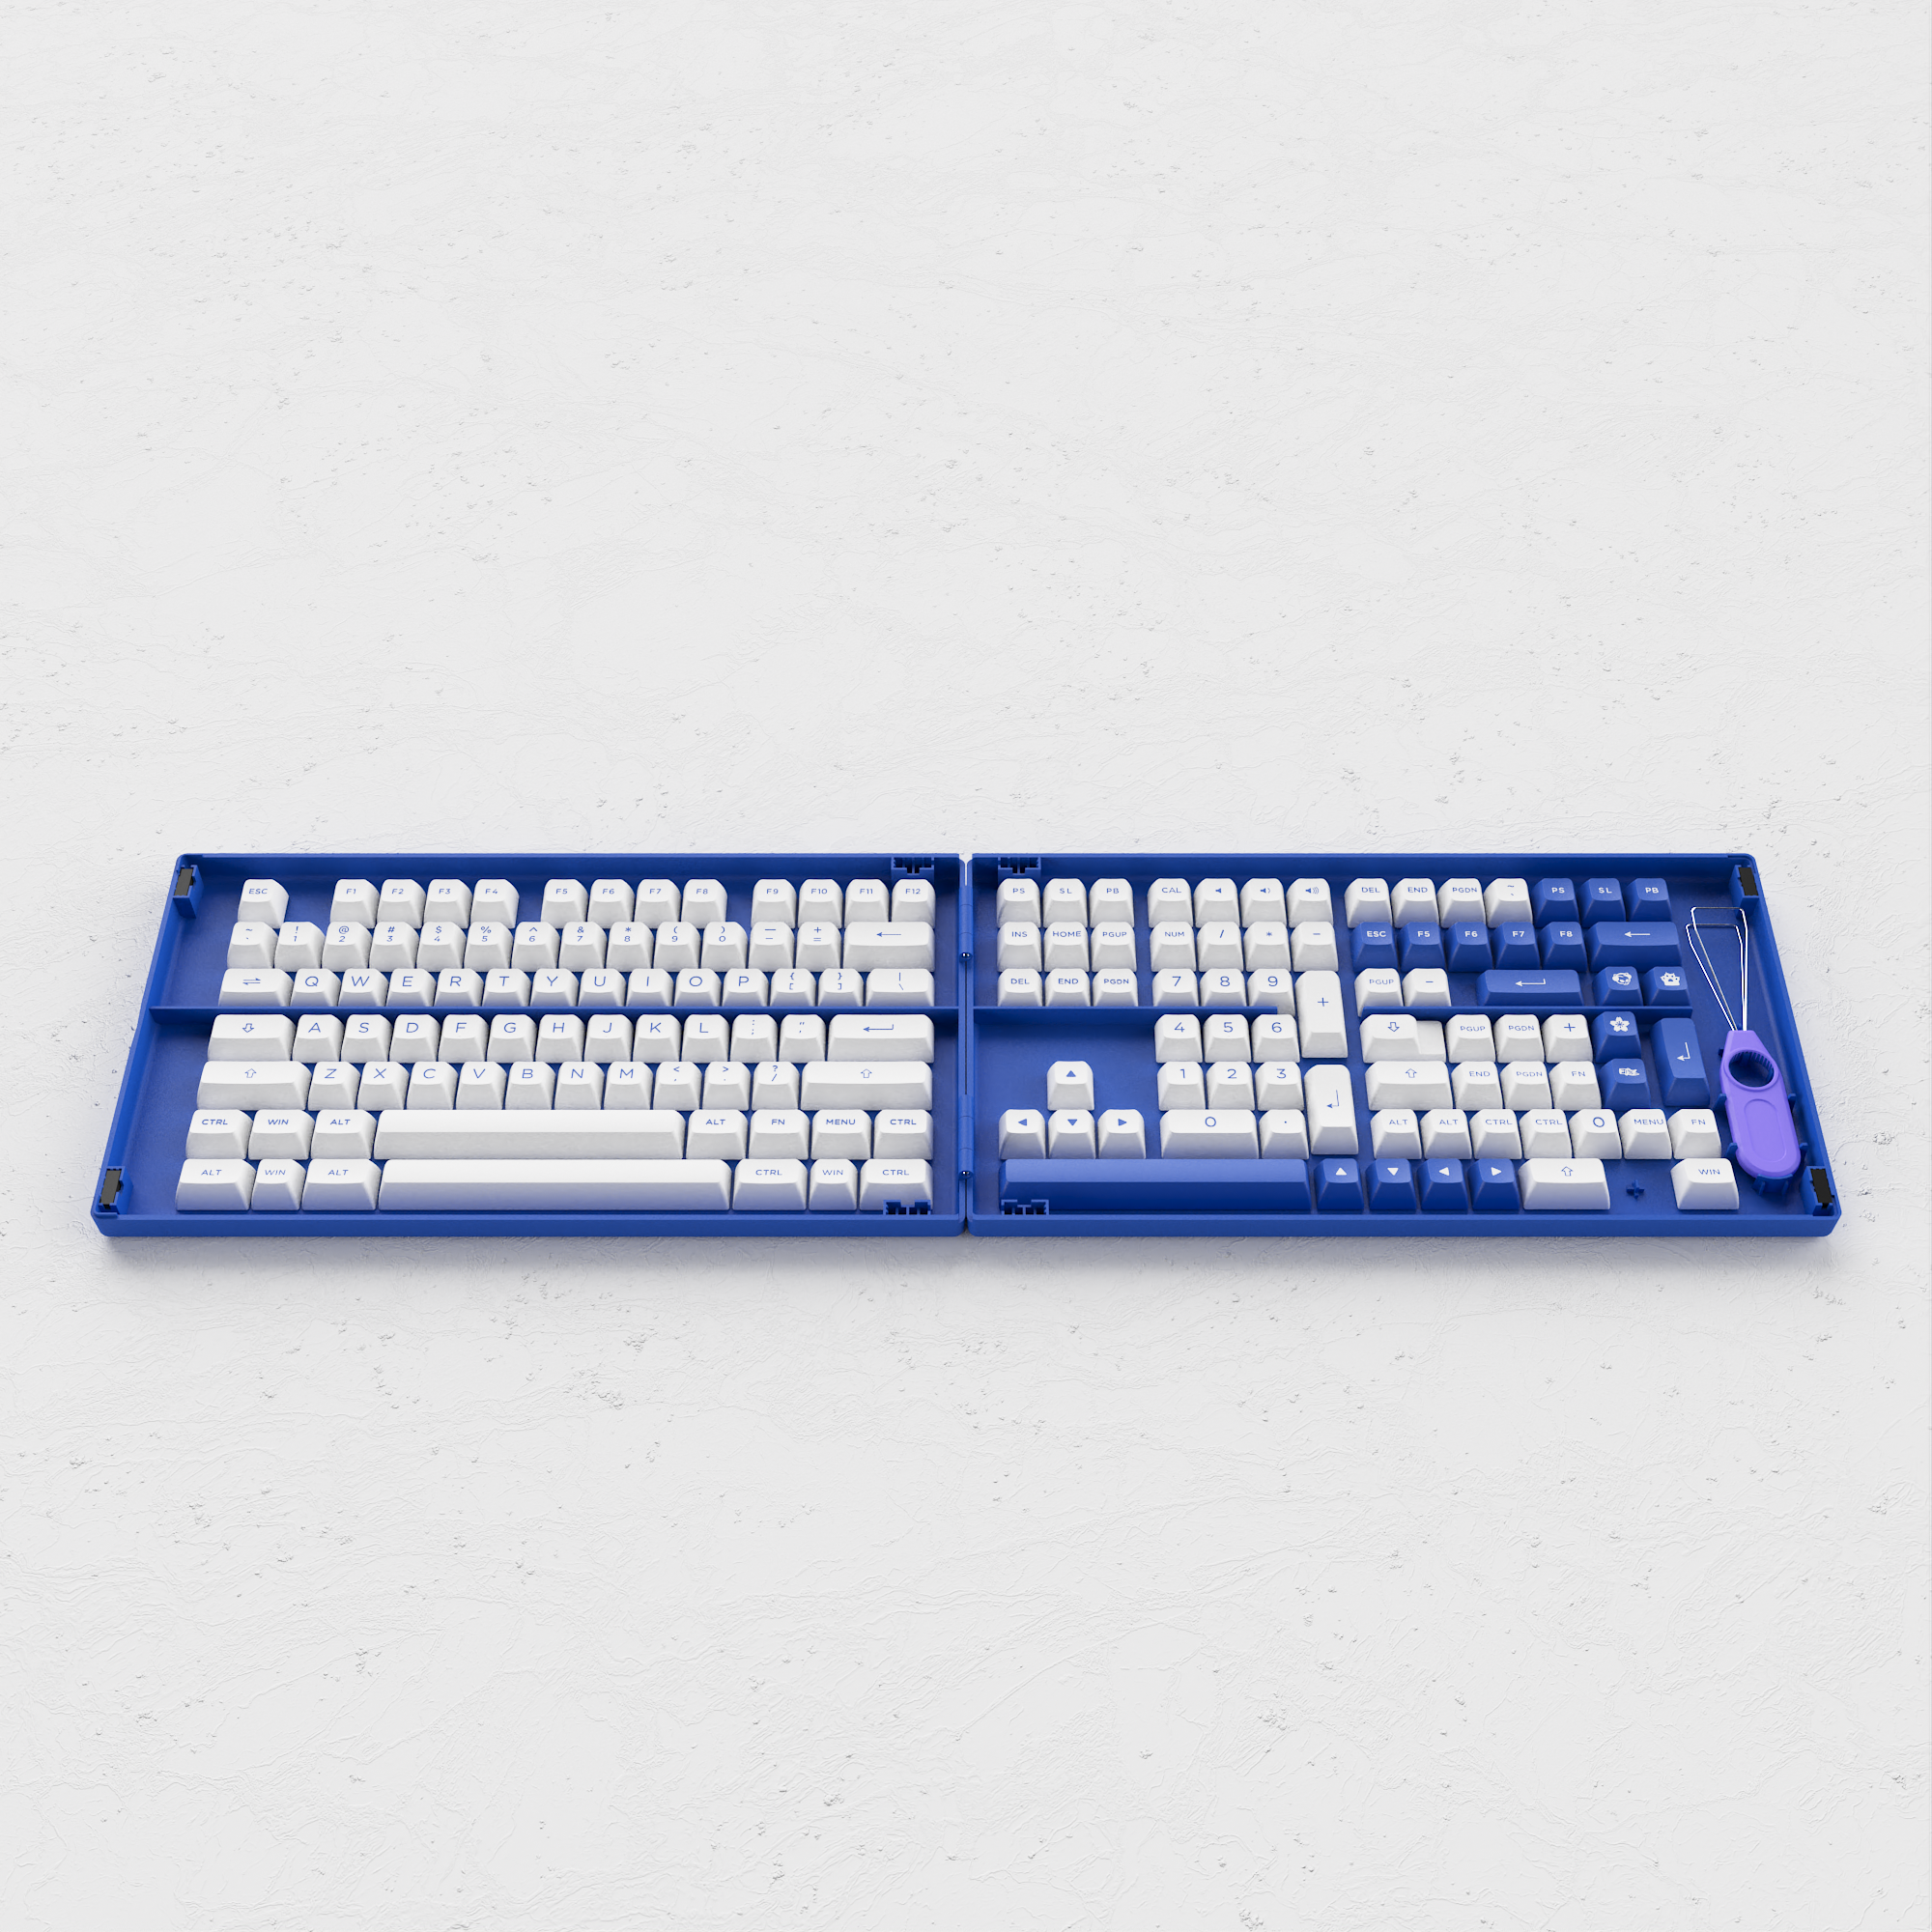 Blue on White Keycap Set (197-Key)